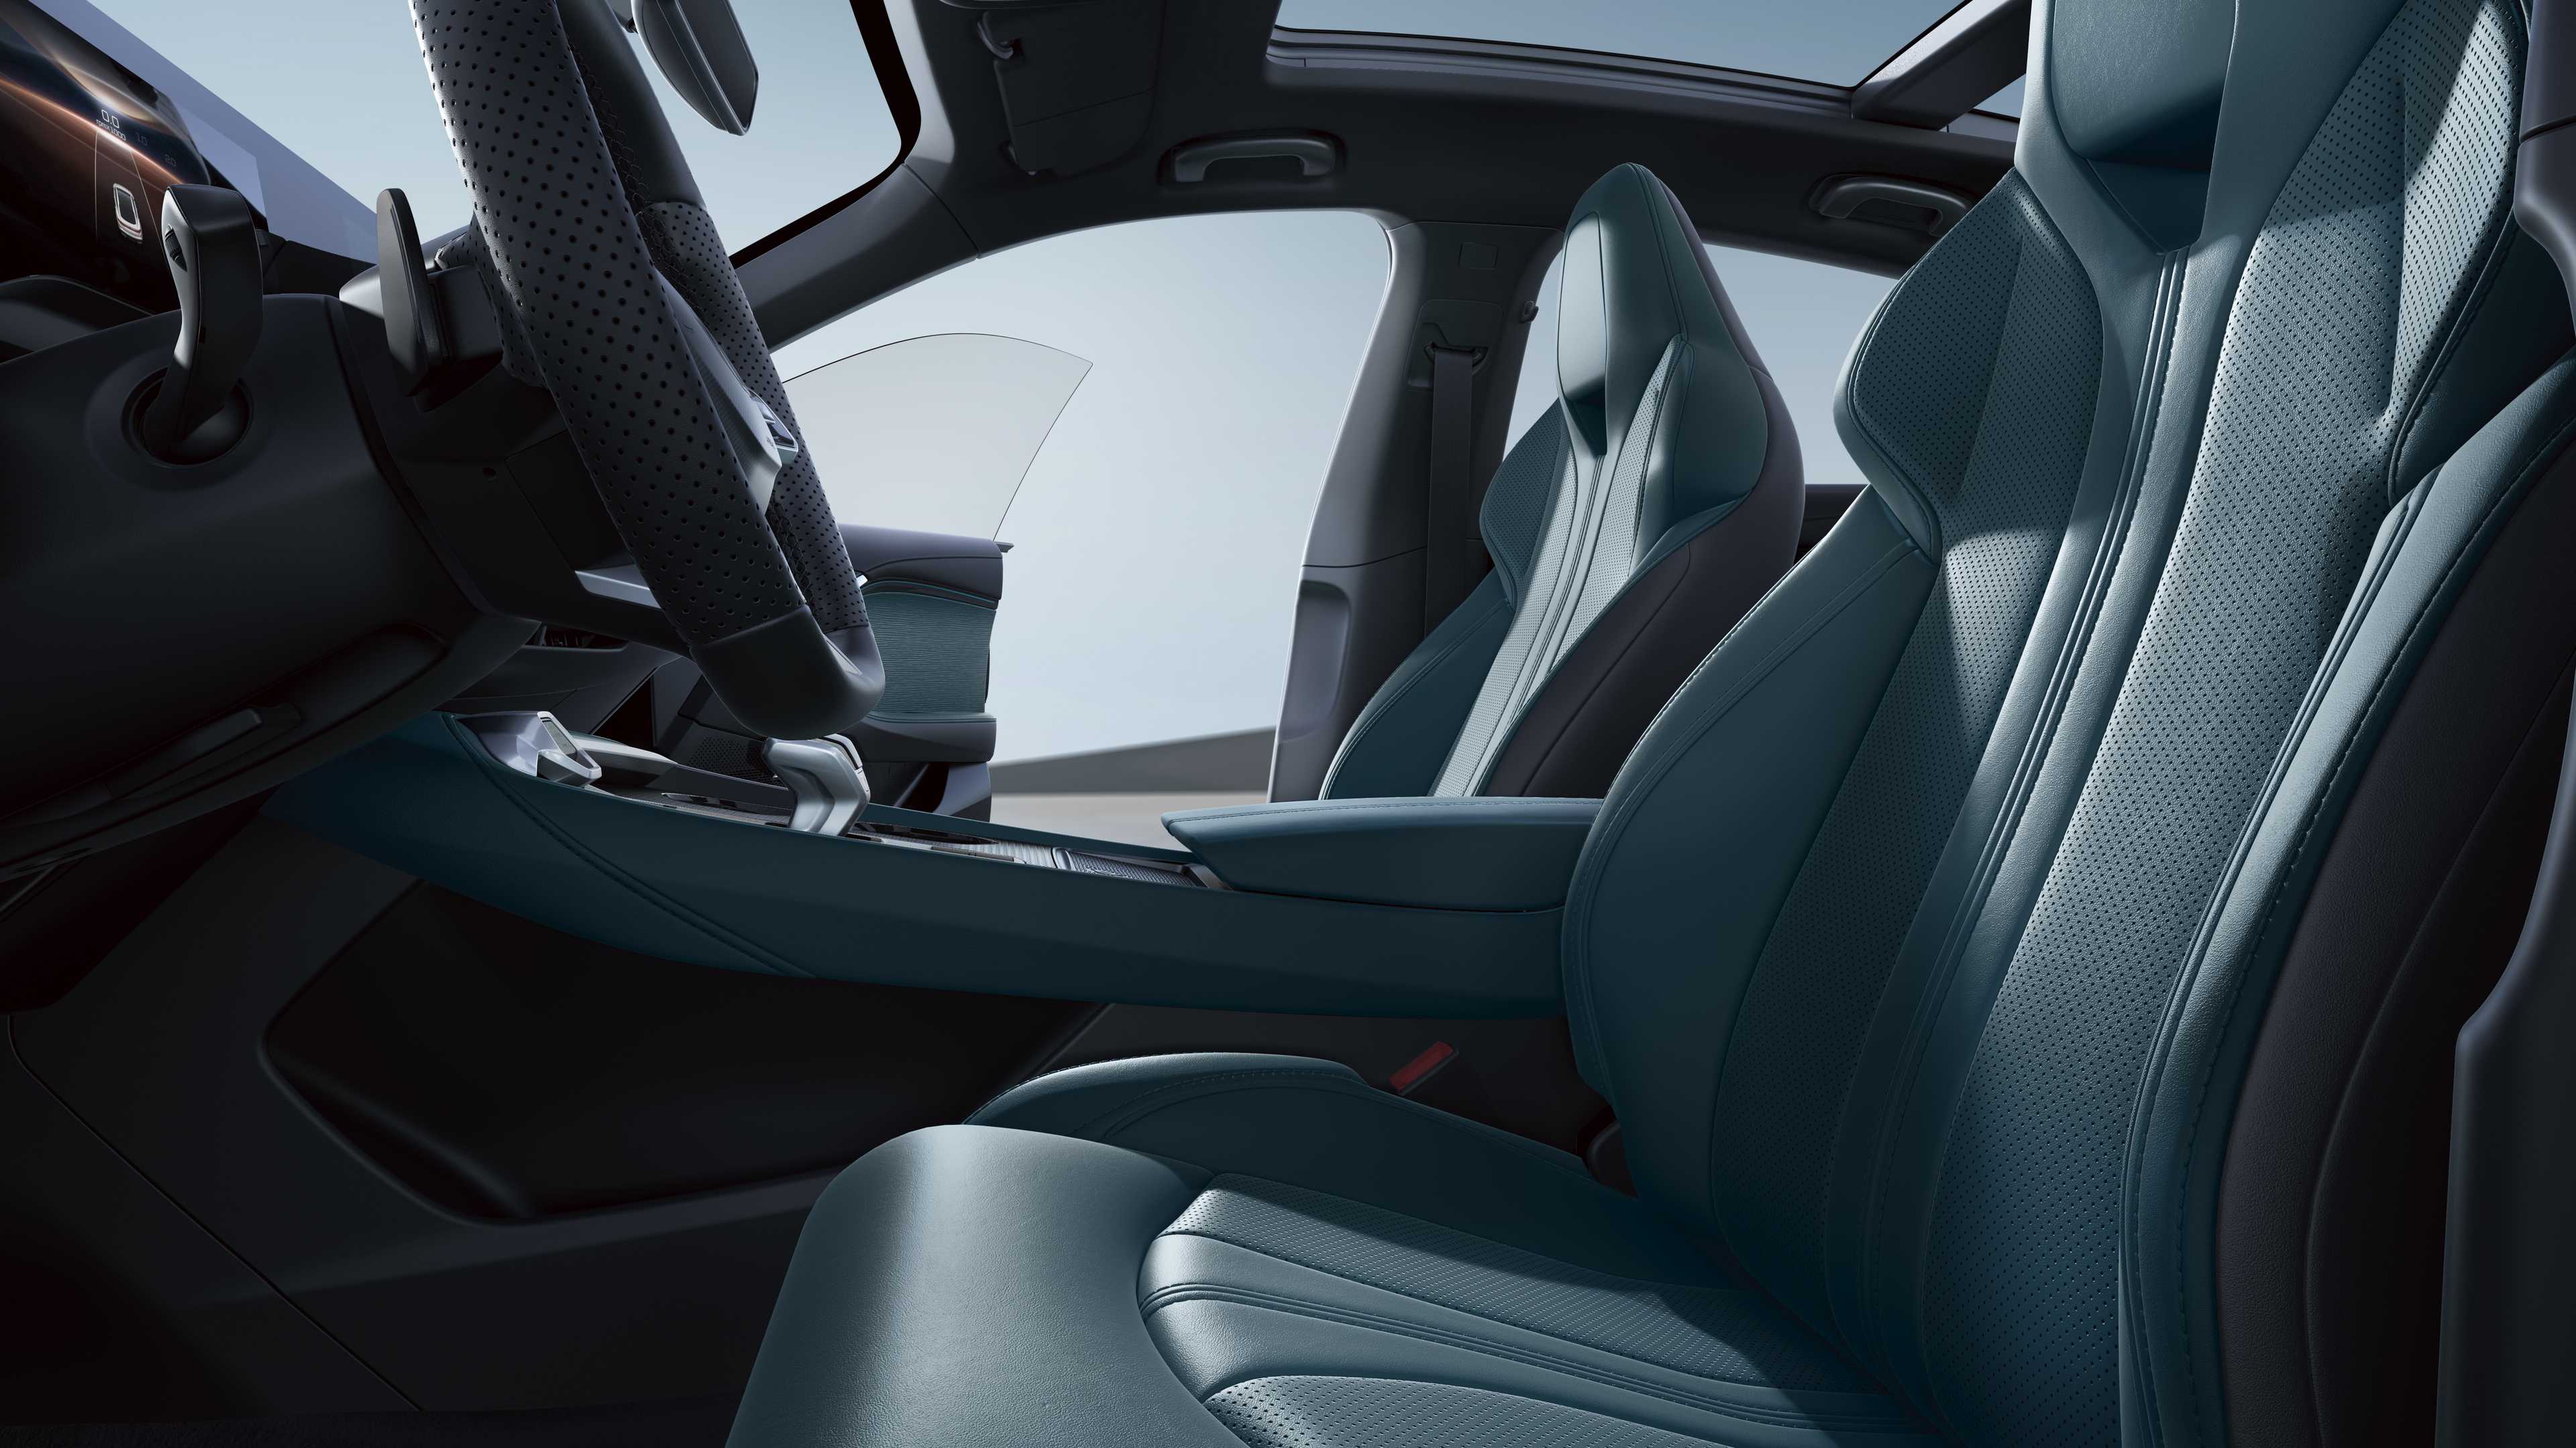 MG MG7 interior - Seats